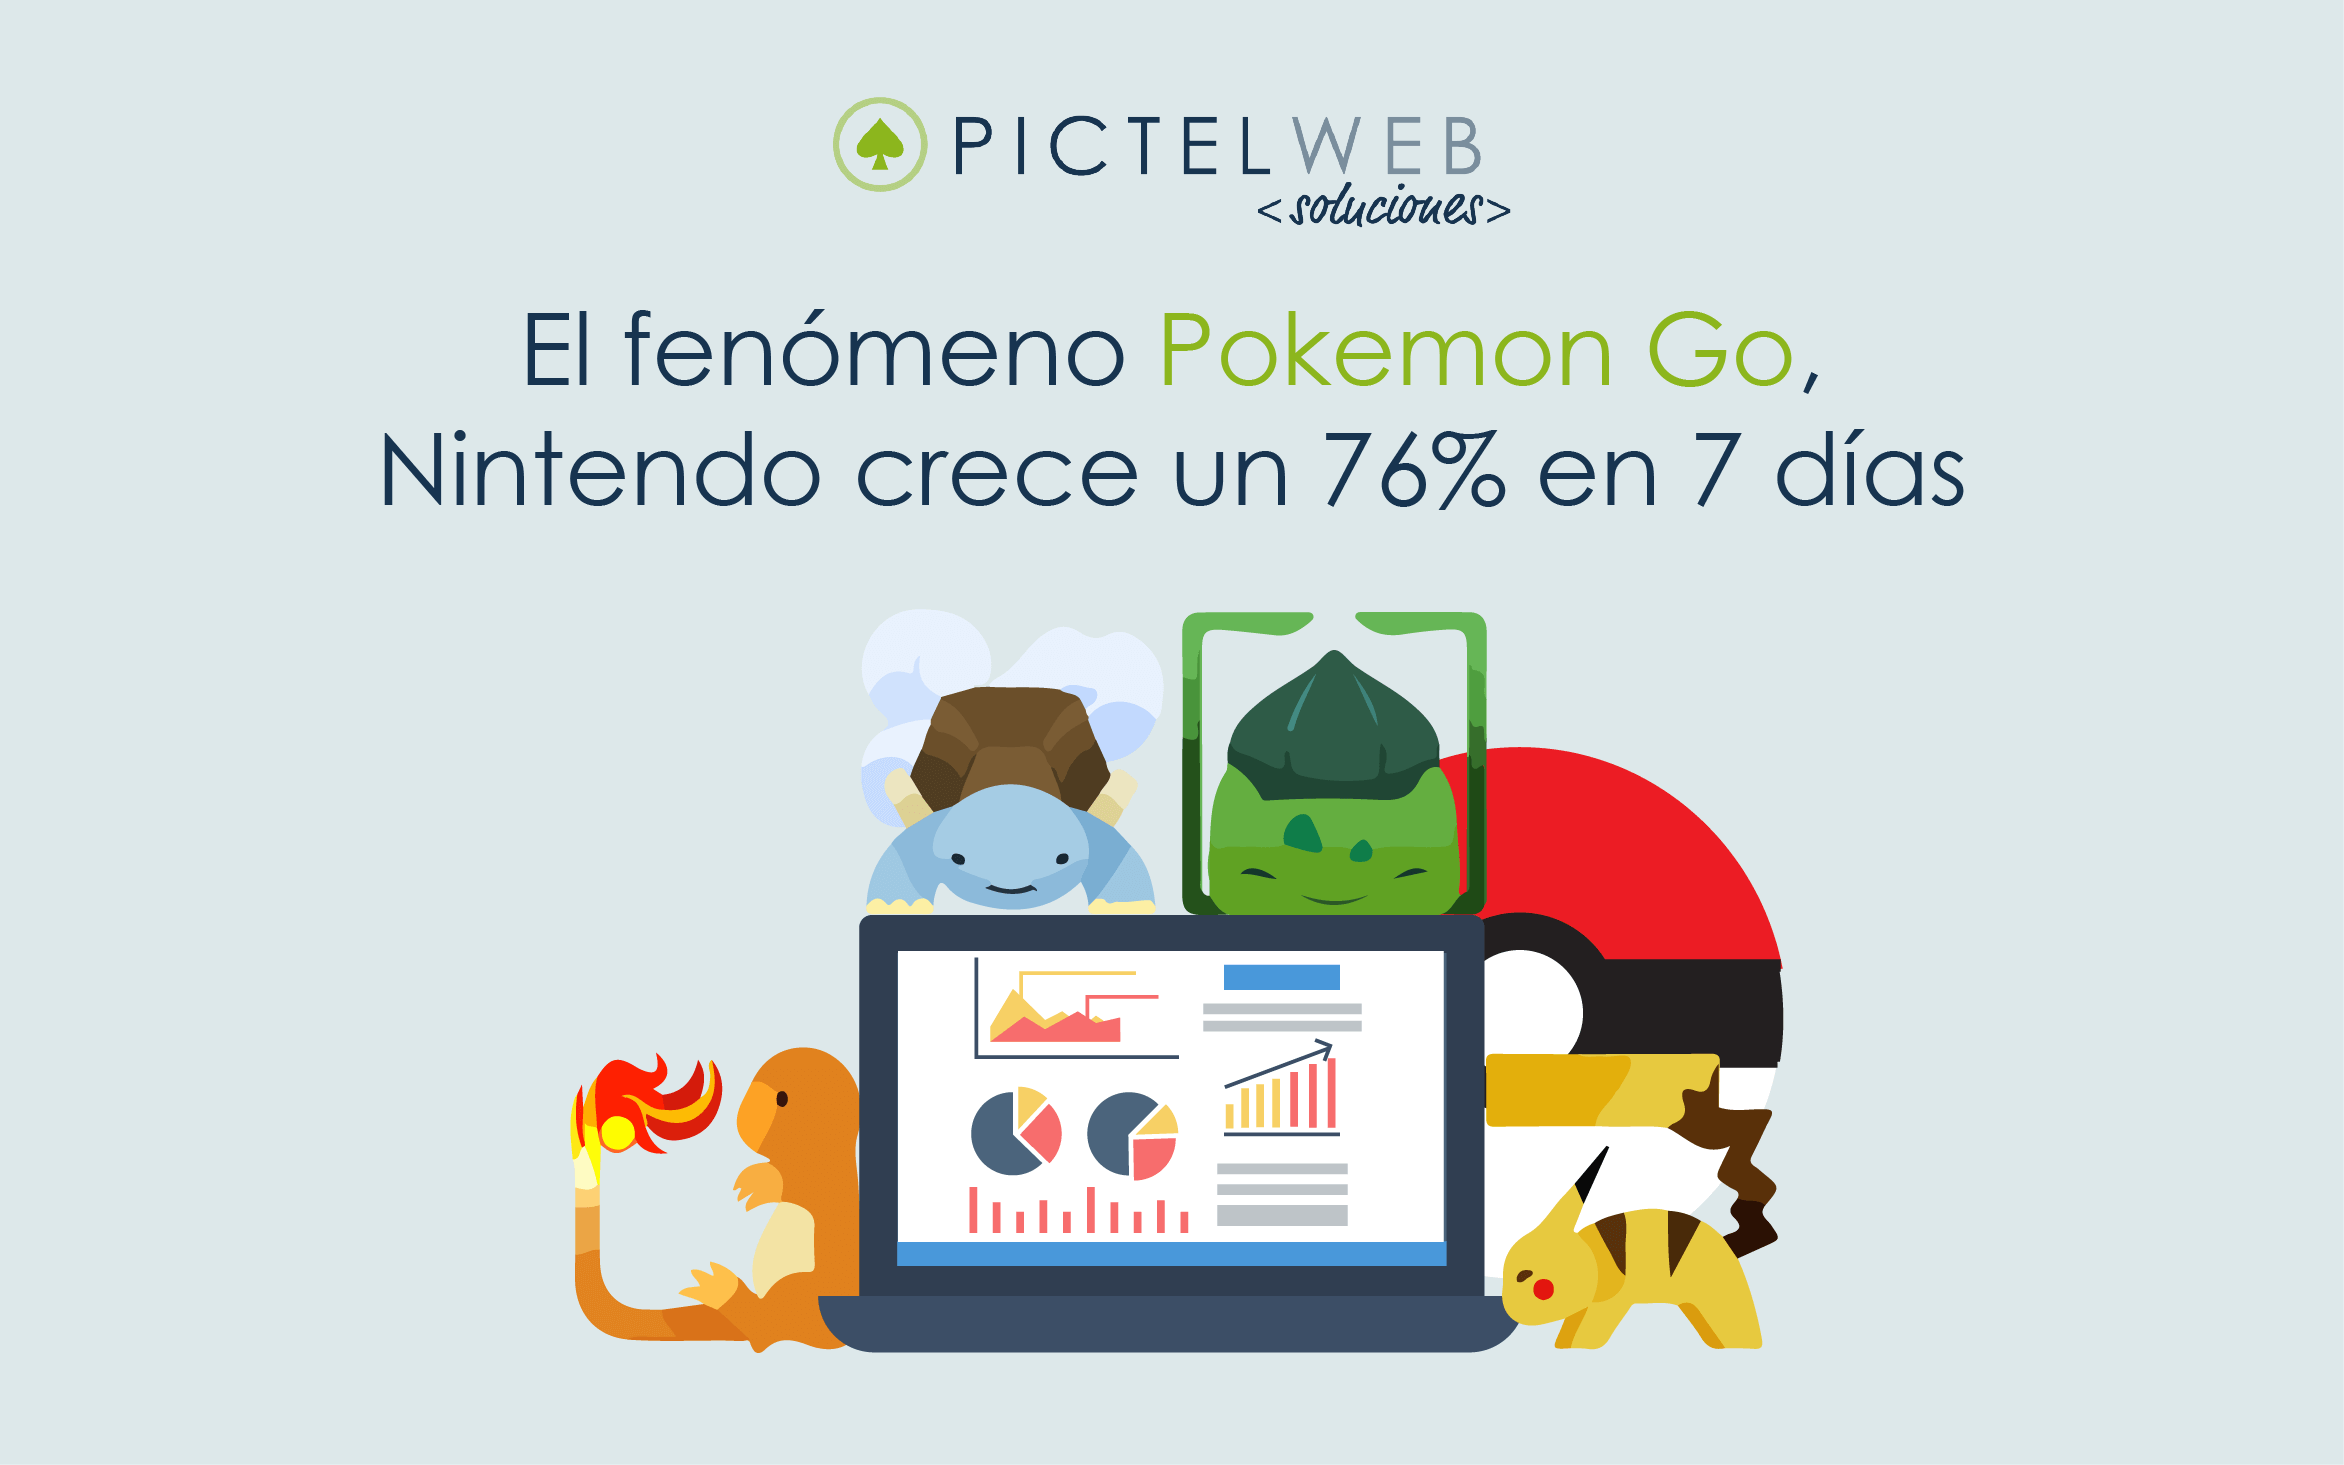 El fenómeno Pokémon Go, Nintendo crece un 76% en 7 días